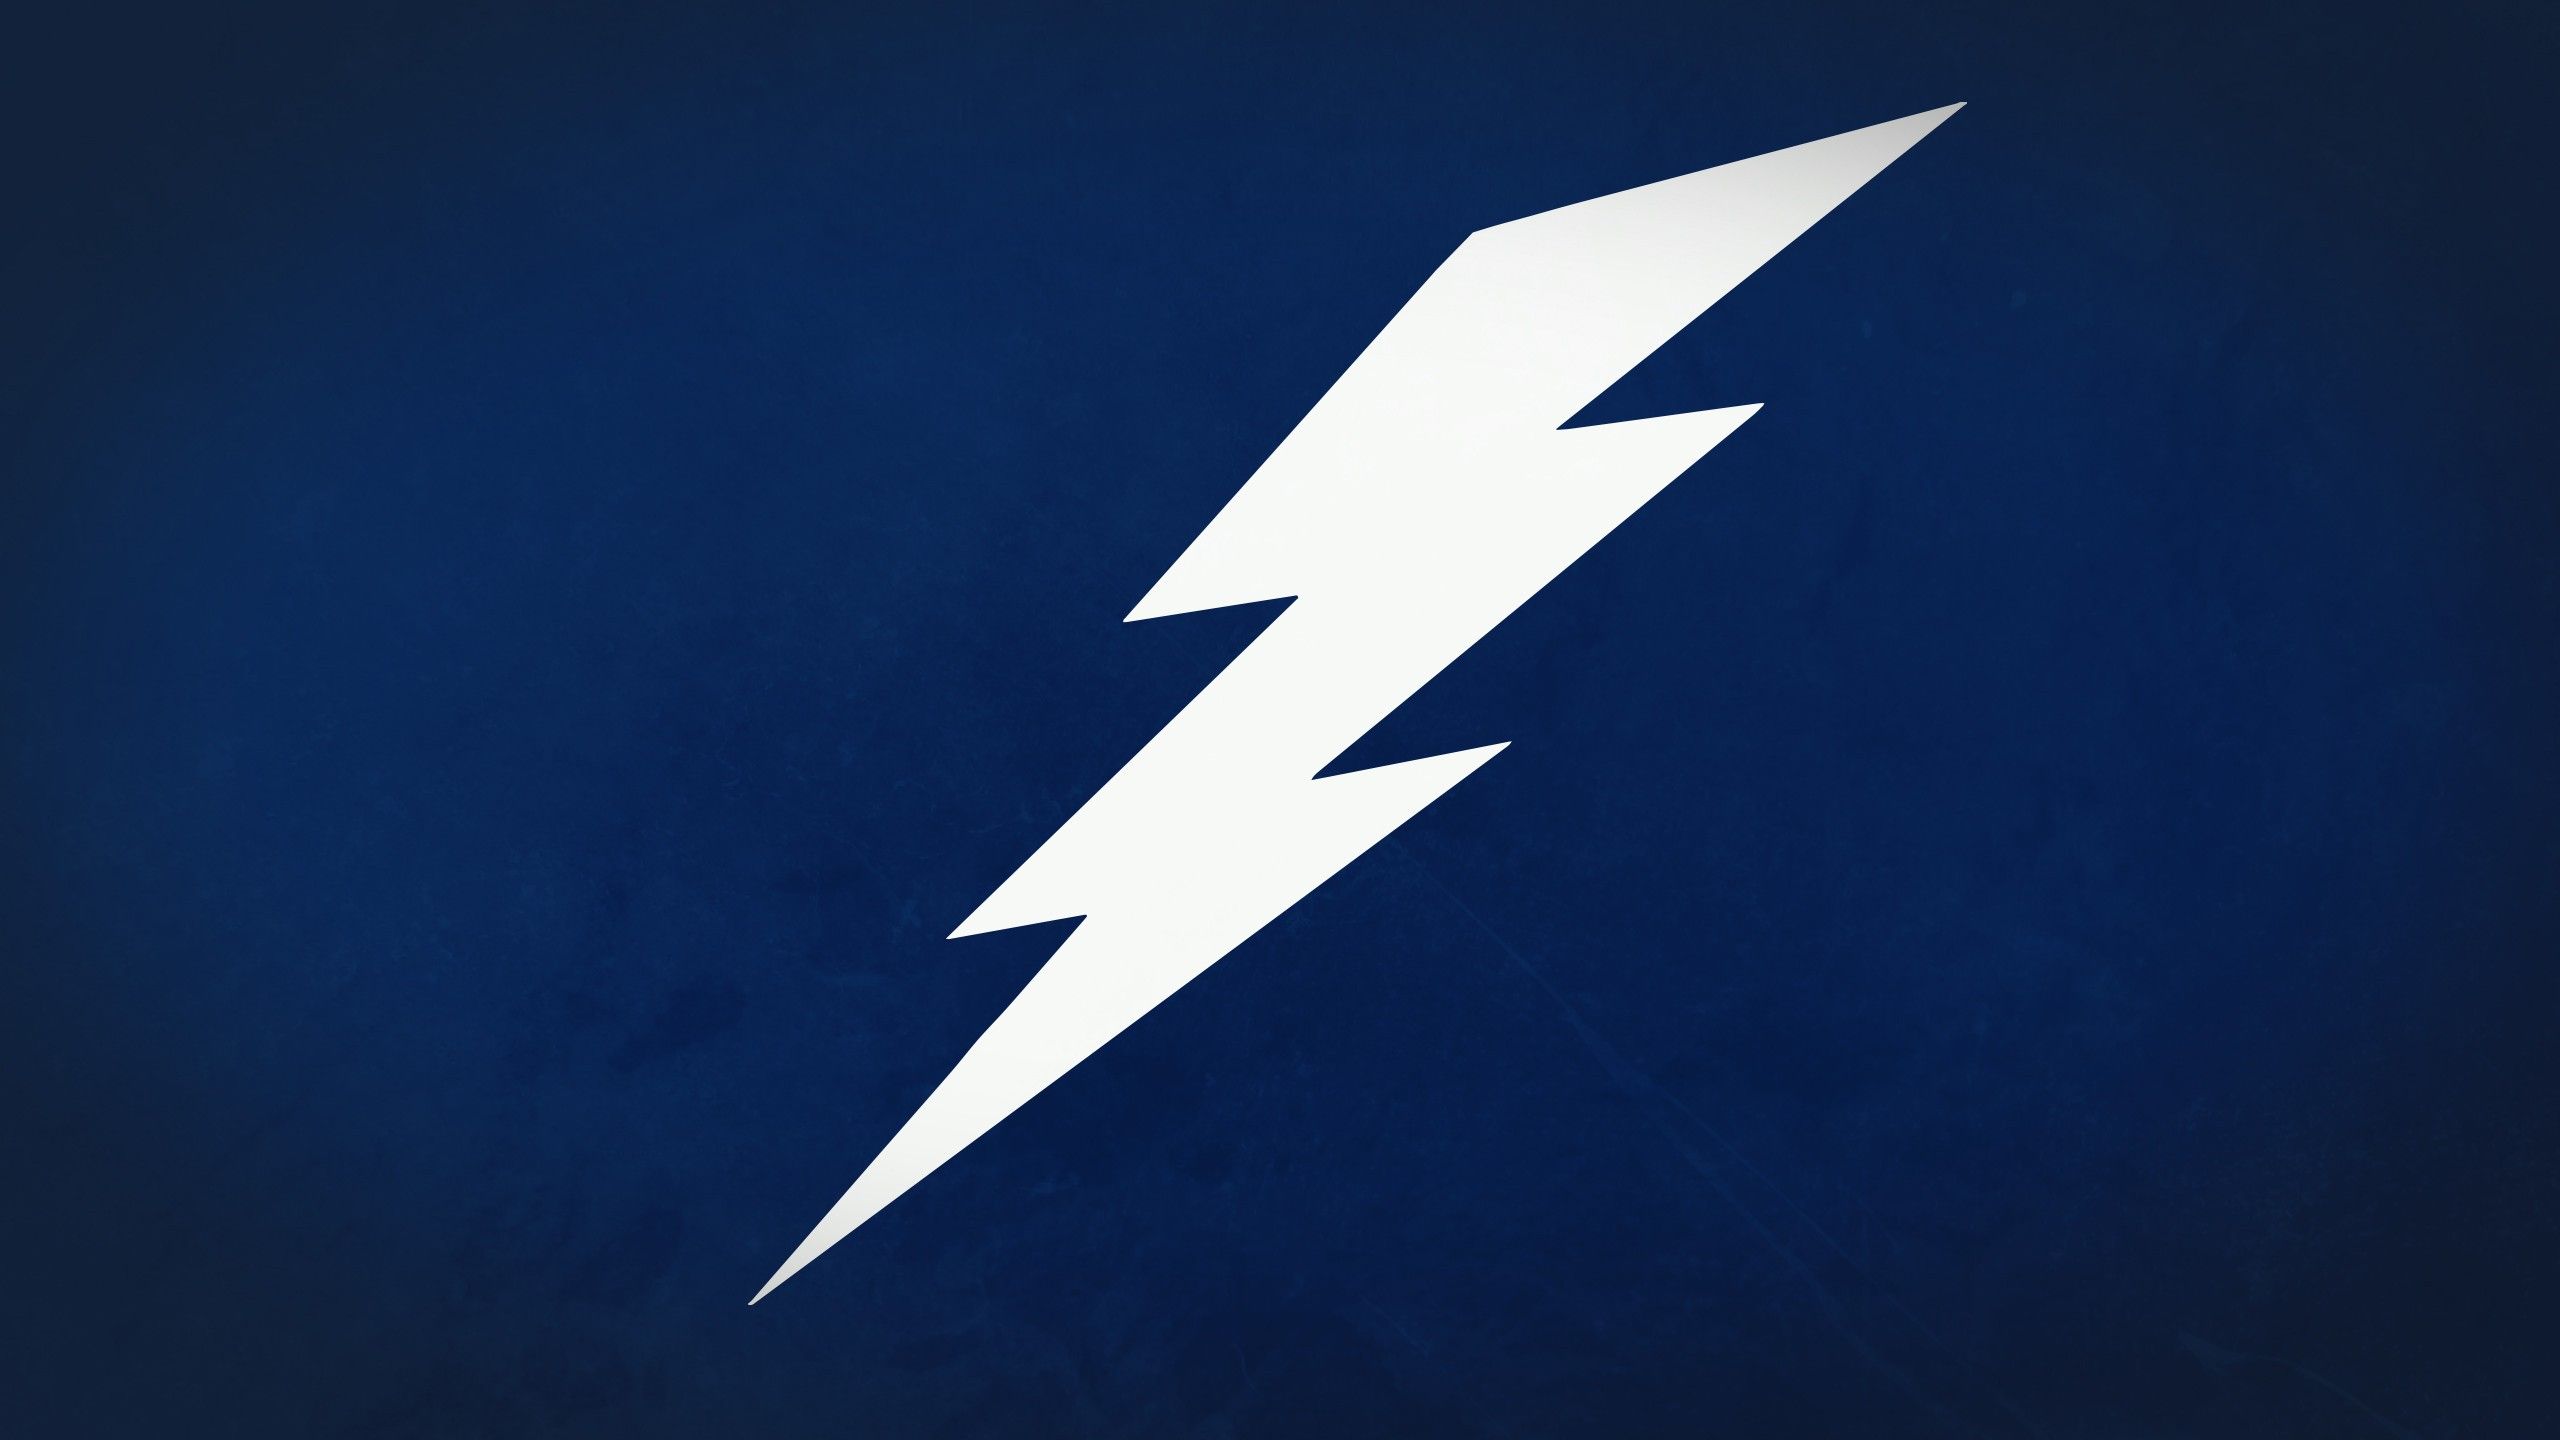 Blue lightning bolt stock illustration Illustration of abstract  105322178